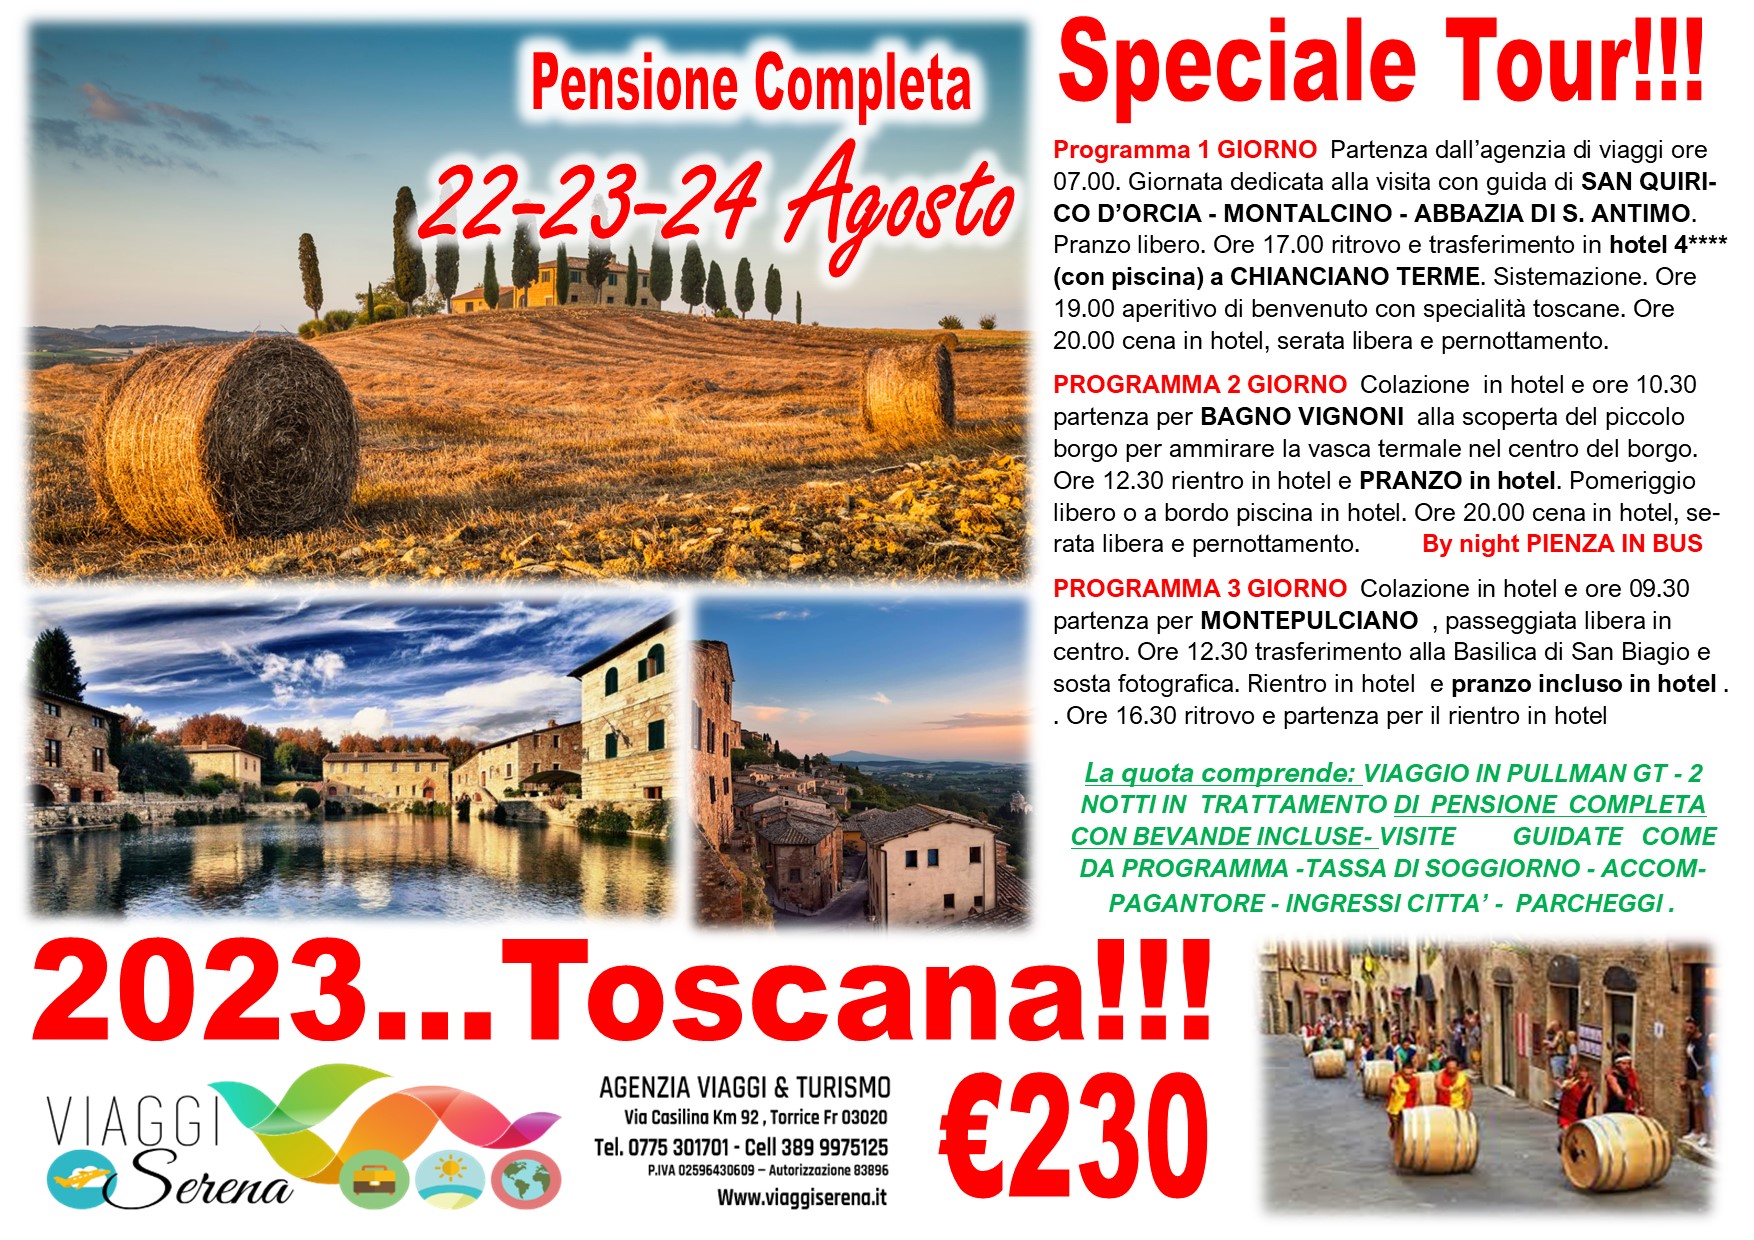 Viaggi di gruppo: Tour Toscana, Pienza by night, Montepulciano & Bagno Vignoni 22-23-24 Agosto  € 230,00